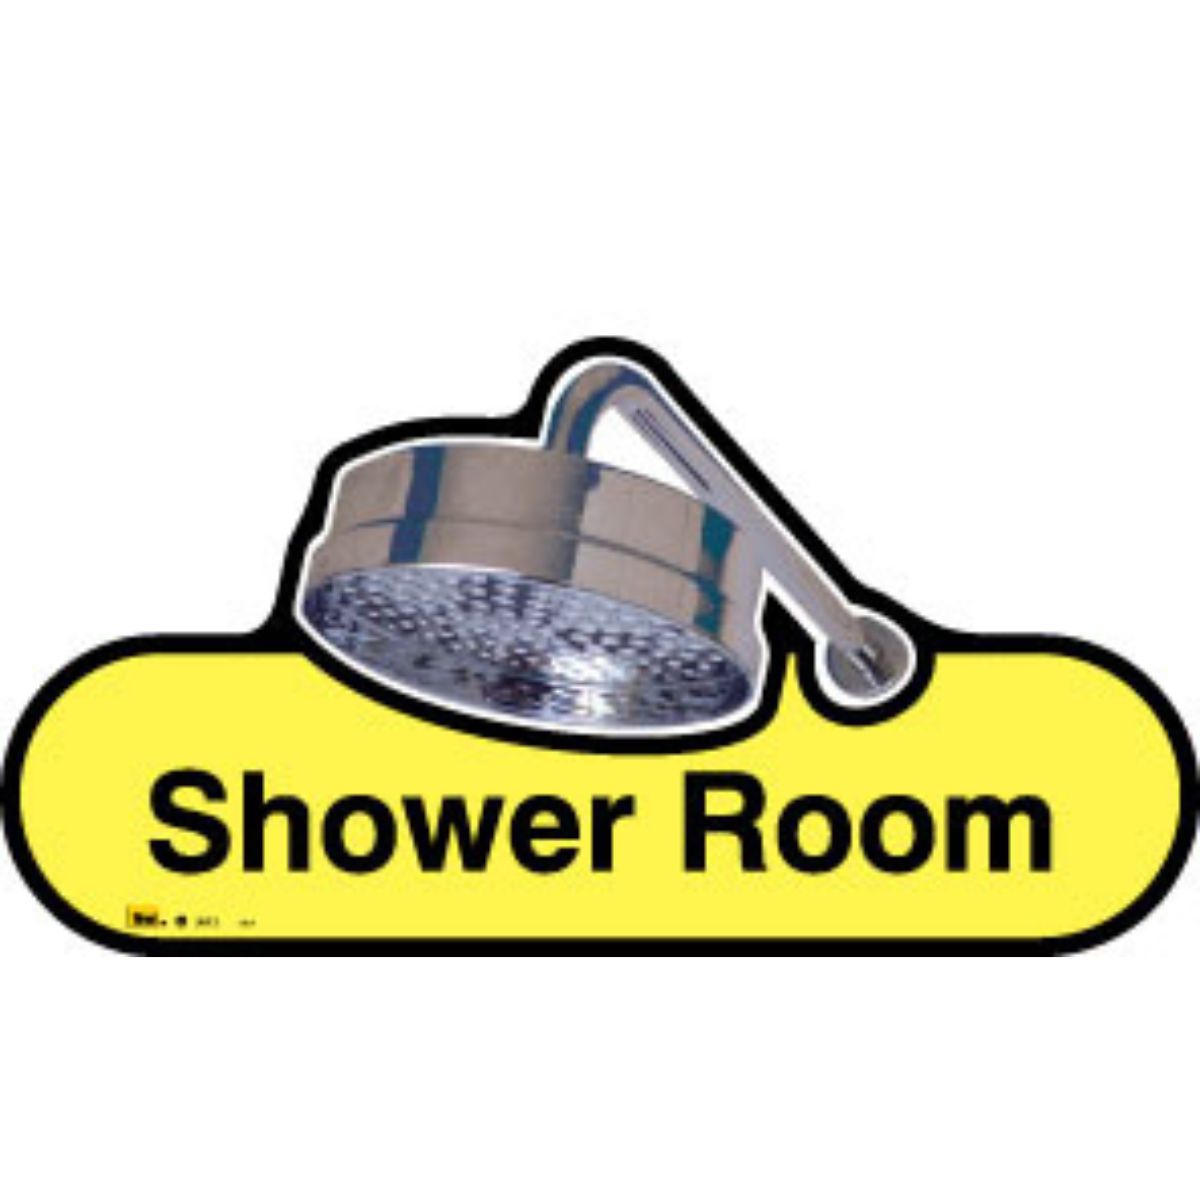 Shower Room Sign, 30cm